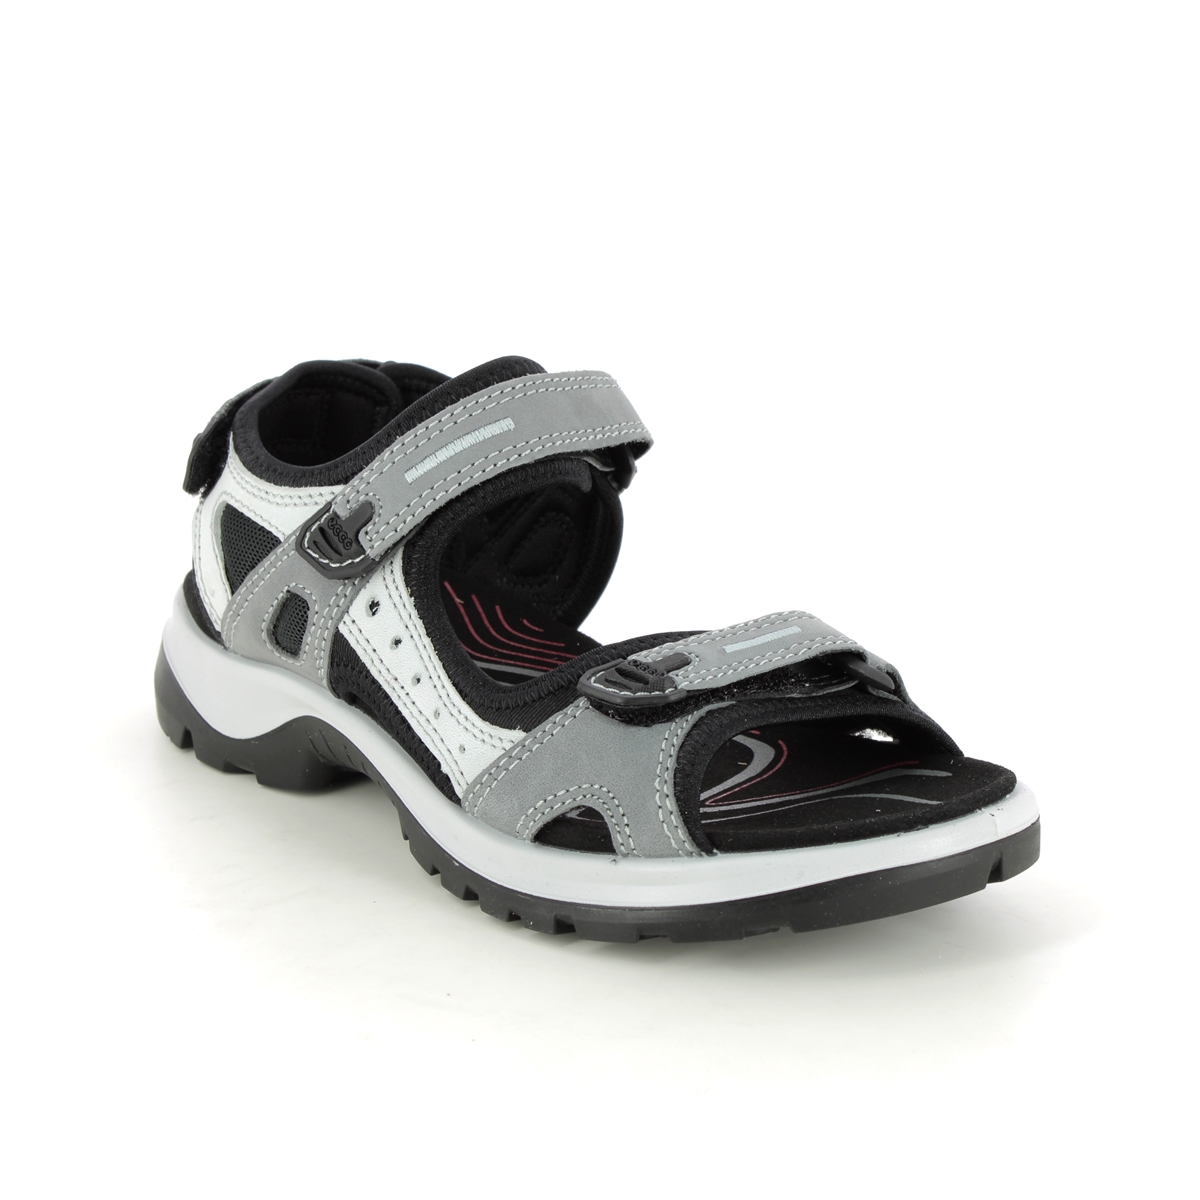 Ecco Offroad Lady Grey Nubuck Womens Walking Sandals 069563-02244 In Size 39 In Plain Grey Nubuck